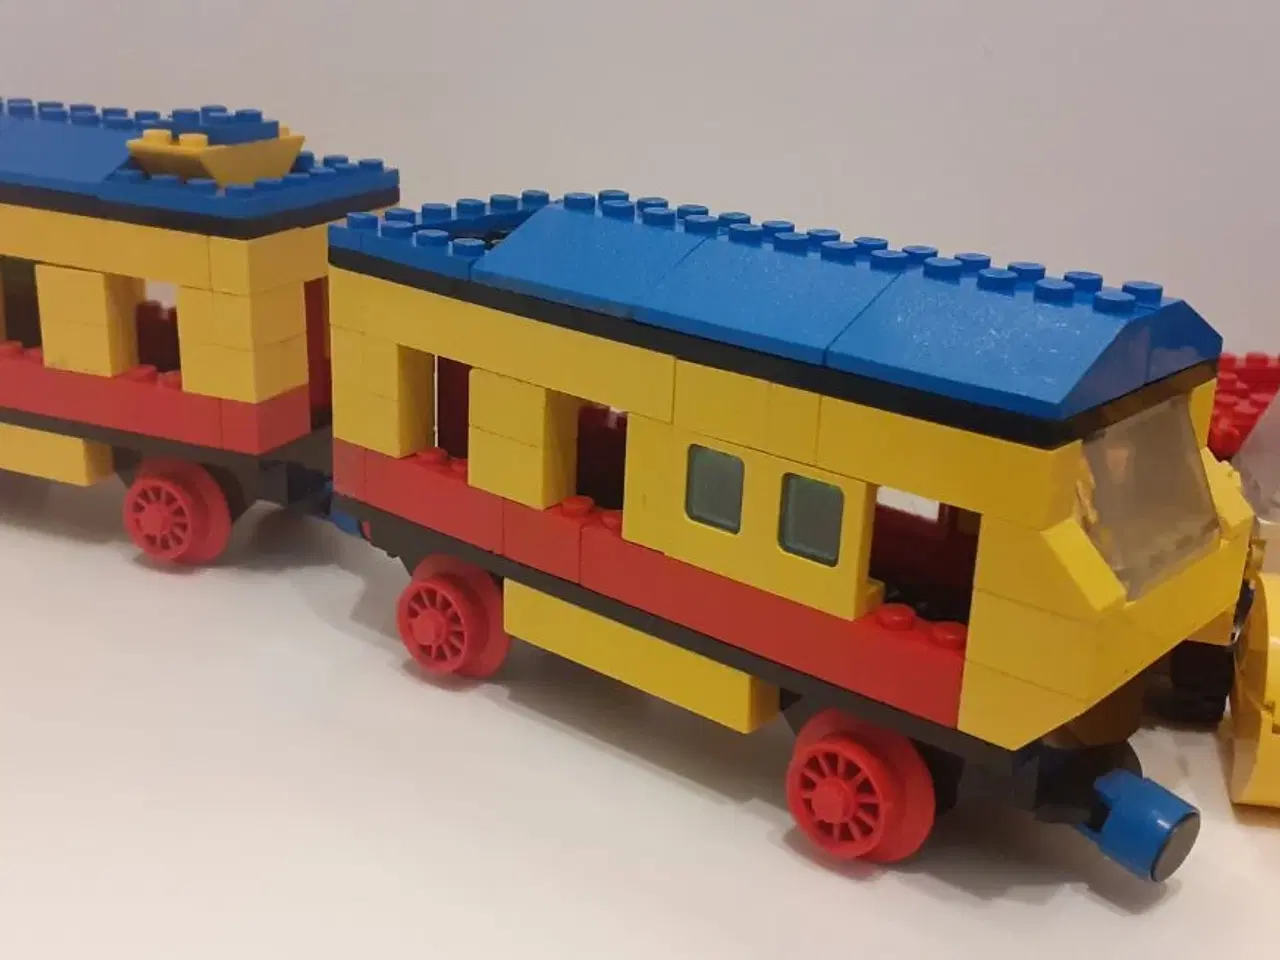 Billede 5 - LEGO tog, stor kranbil, motorenhed med hjul m.m.